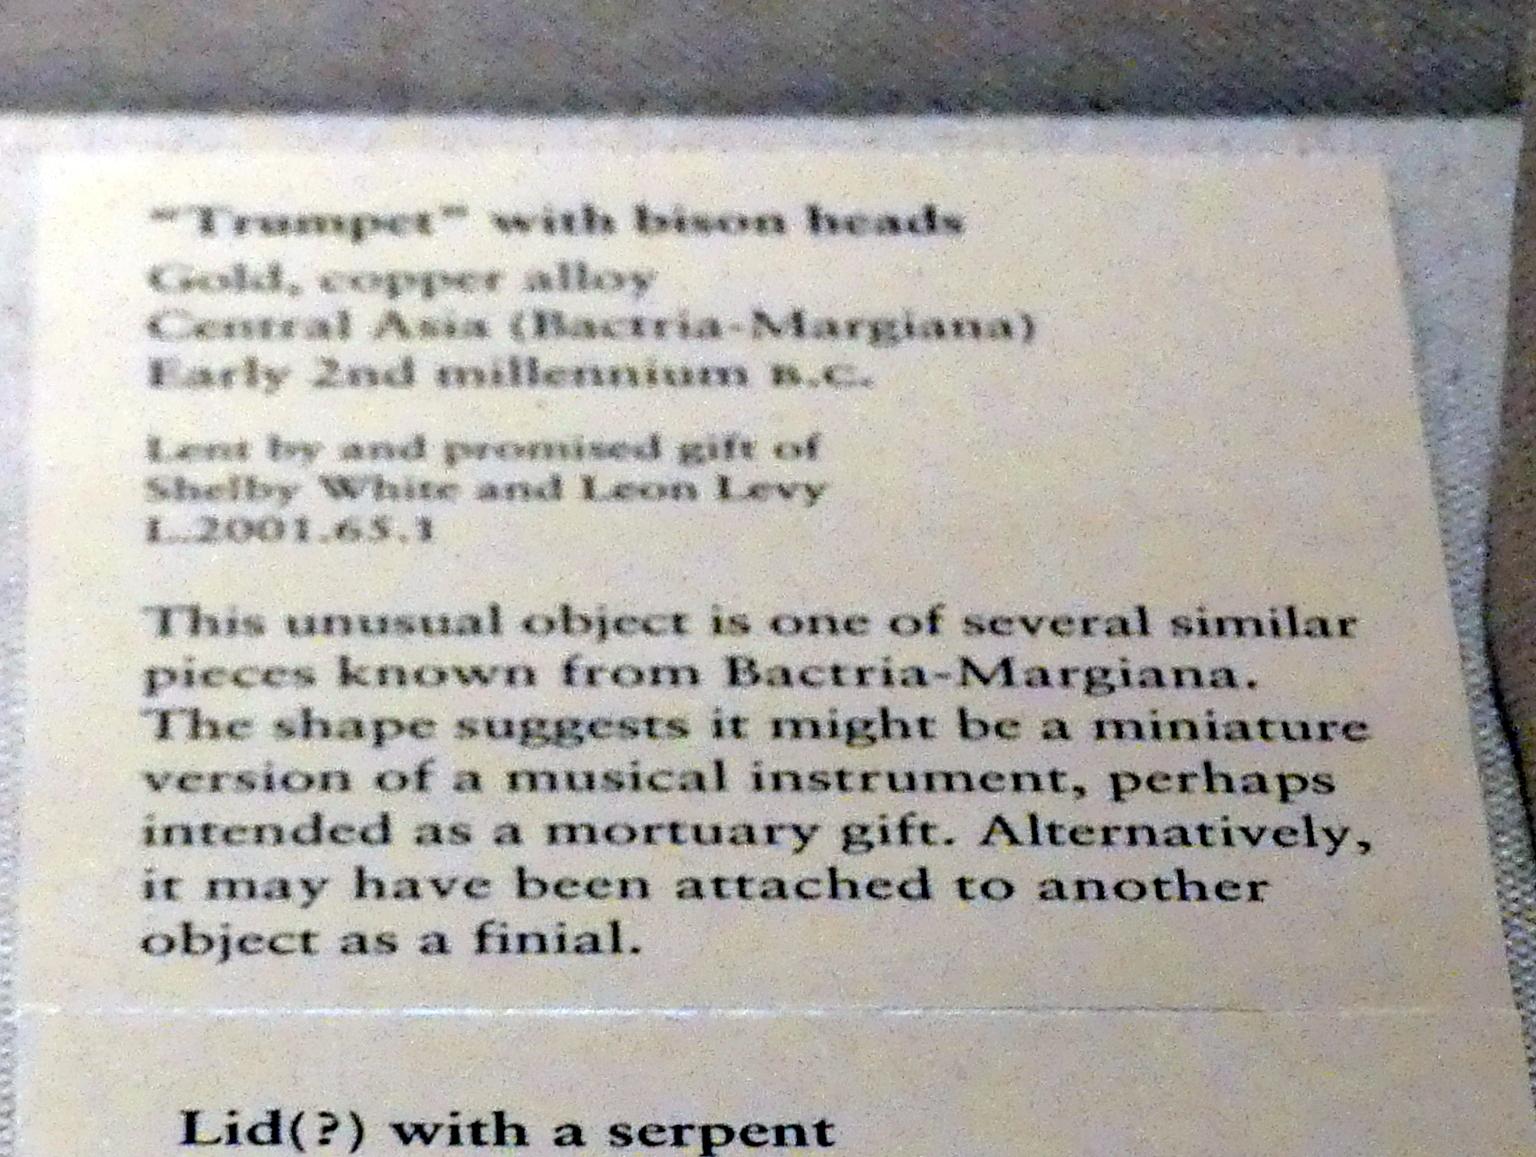 'Trompete' mit Bisonköpfen, 2000 - 1800 v. Chr., Bild 2/2